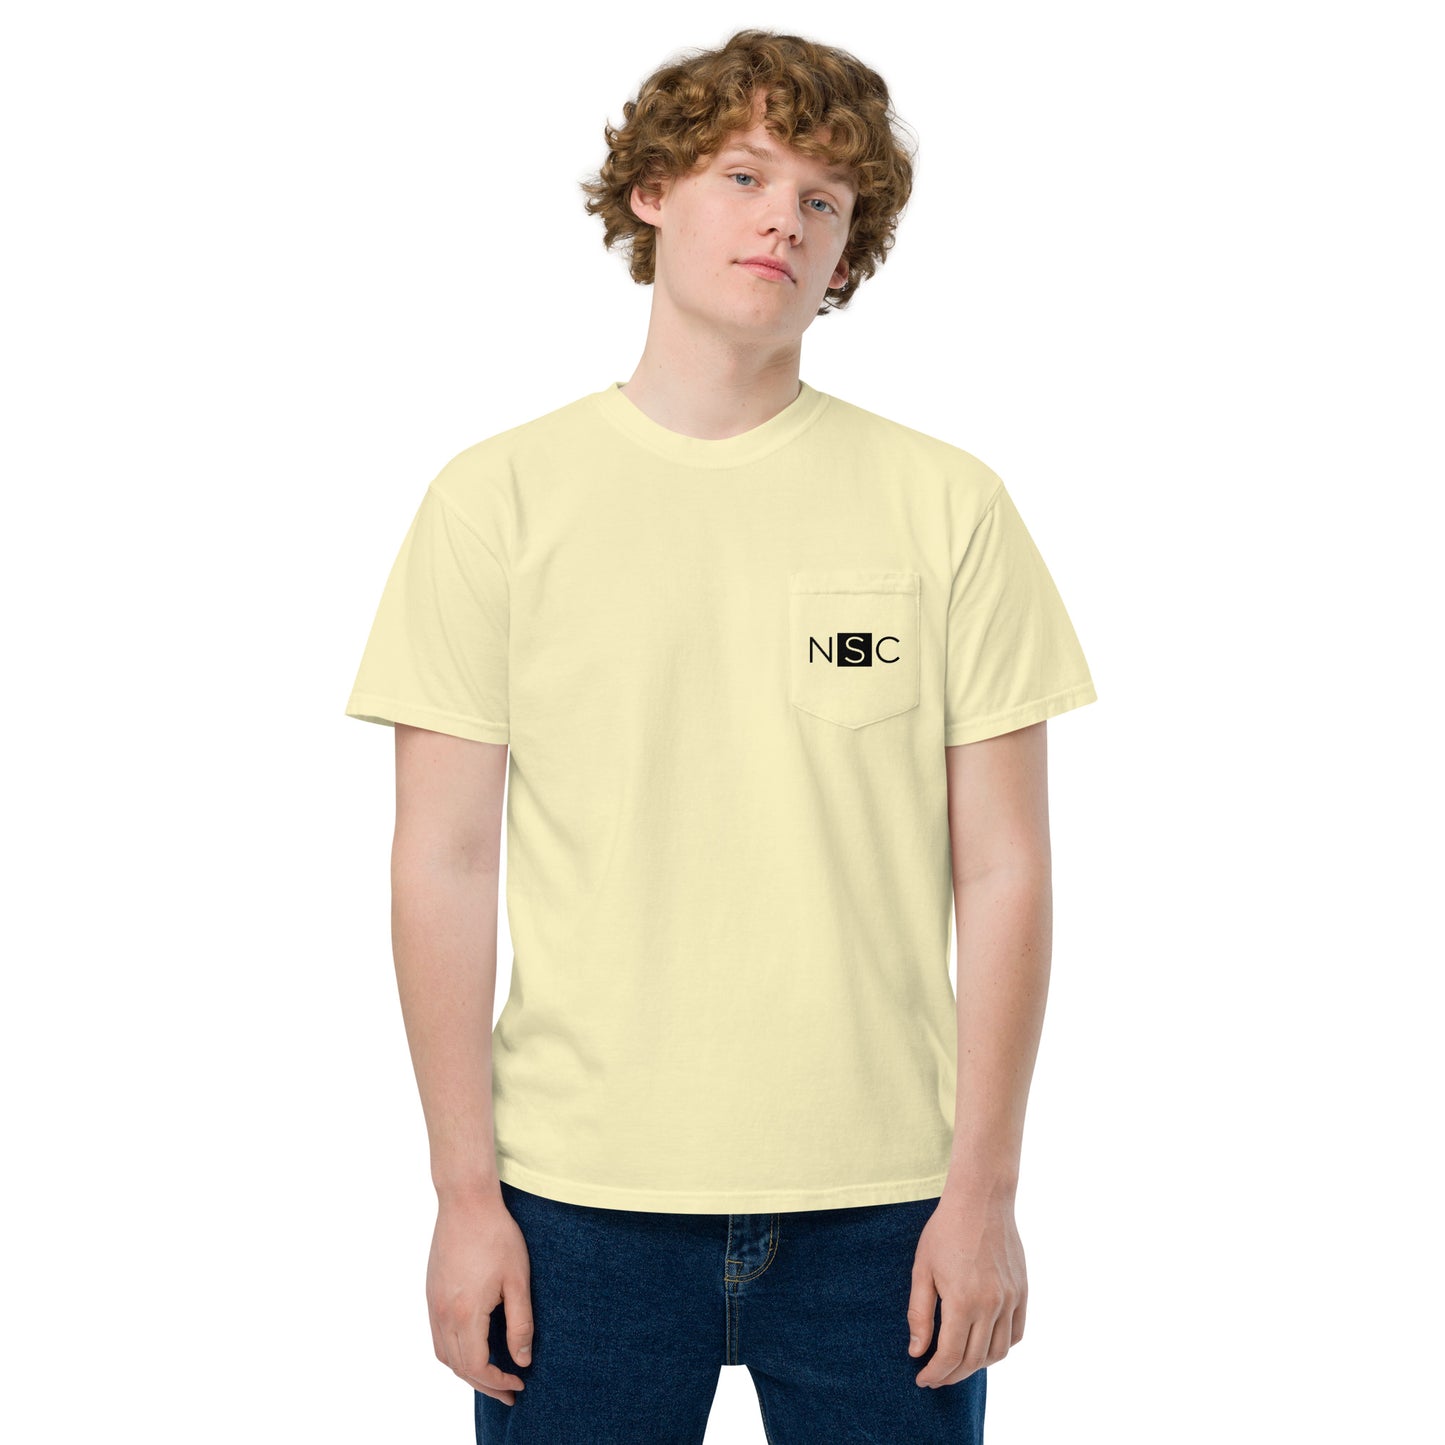 Nashville Sampling Co (NSC) Embroidered Unisex Garment-Dyed Pocket T-Shirt